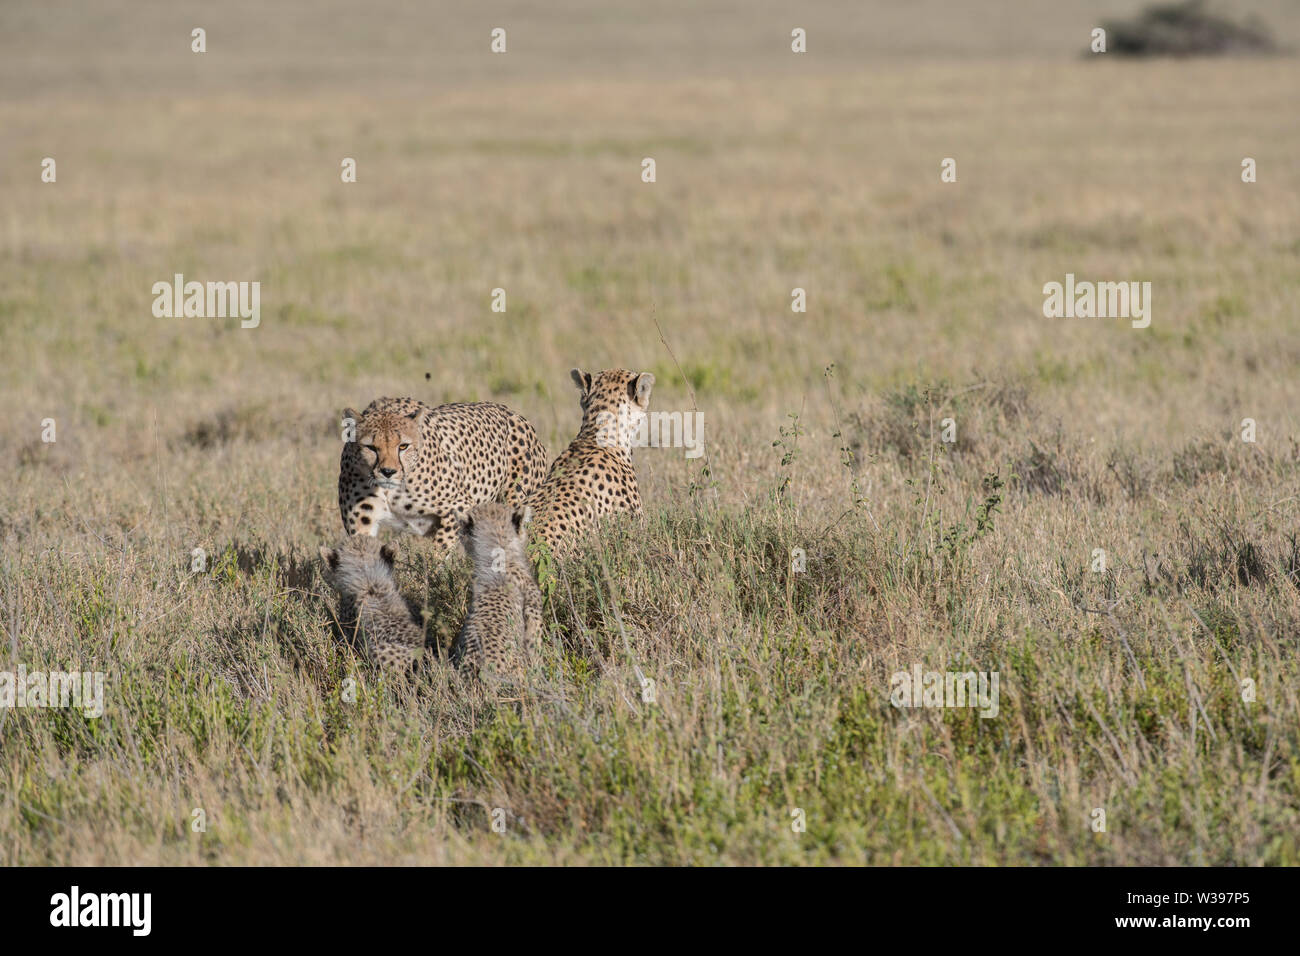 Los guepardos macho investigando una madre y sus crías, Parque Nacional del Serengeti, Tanzania - hay una serie de imágenes disponibles para este encuentro. Foto de stock